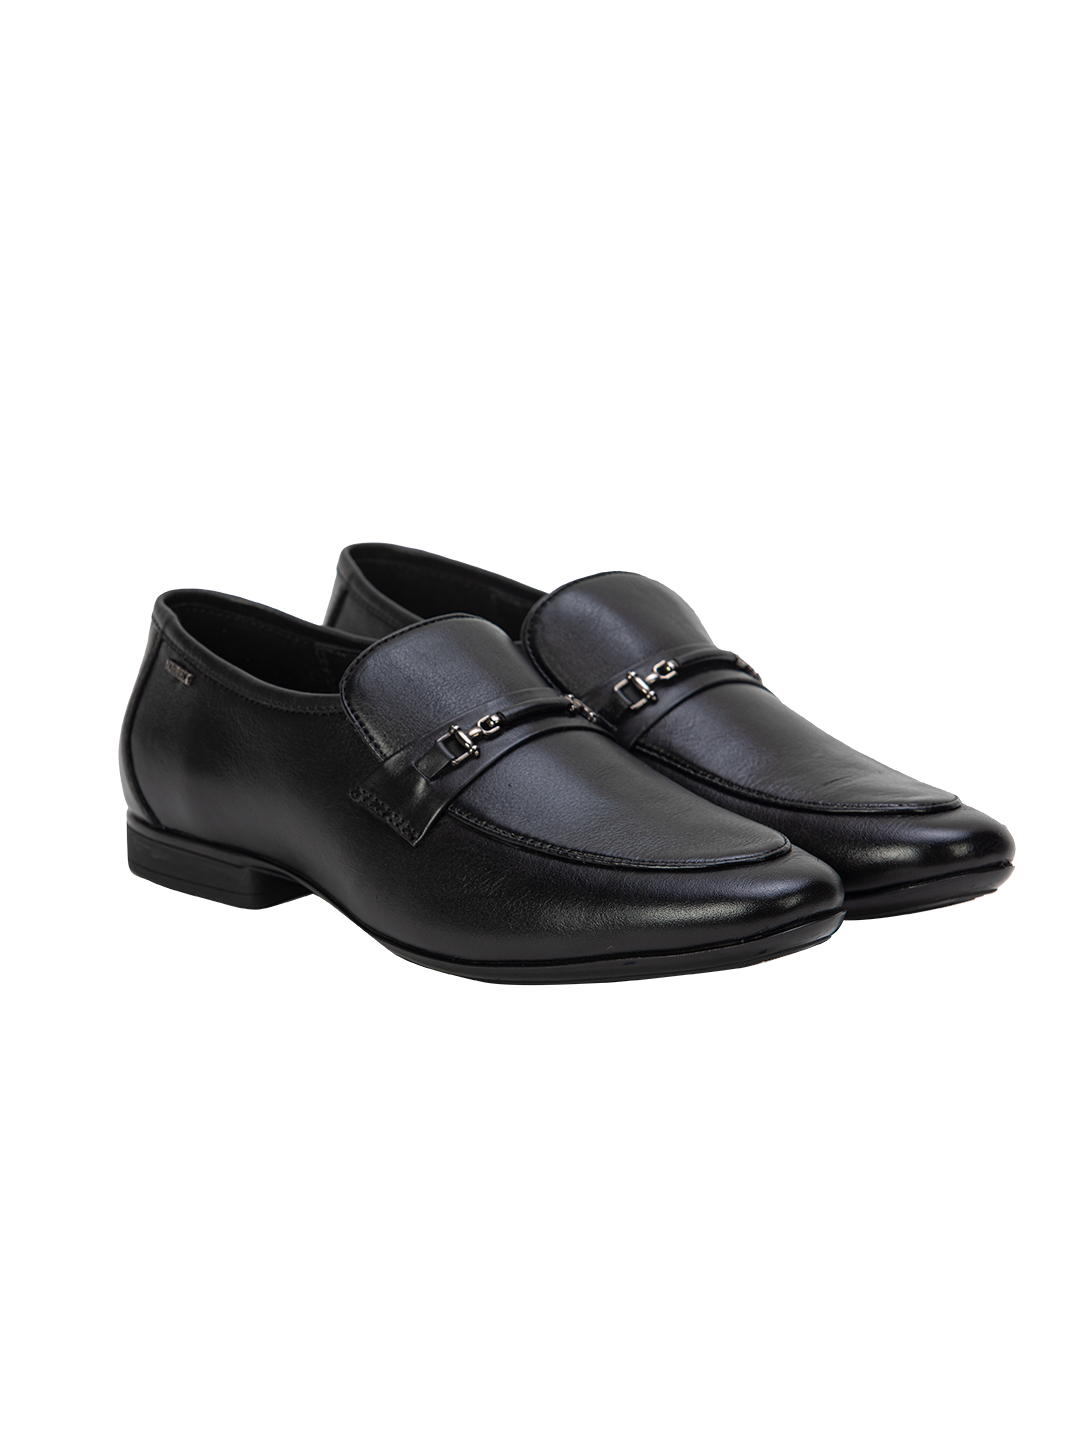 Buy Von Wellx Germany Comfort Black Glib Shoes Online in Dehradun